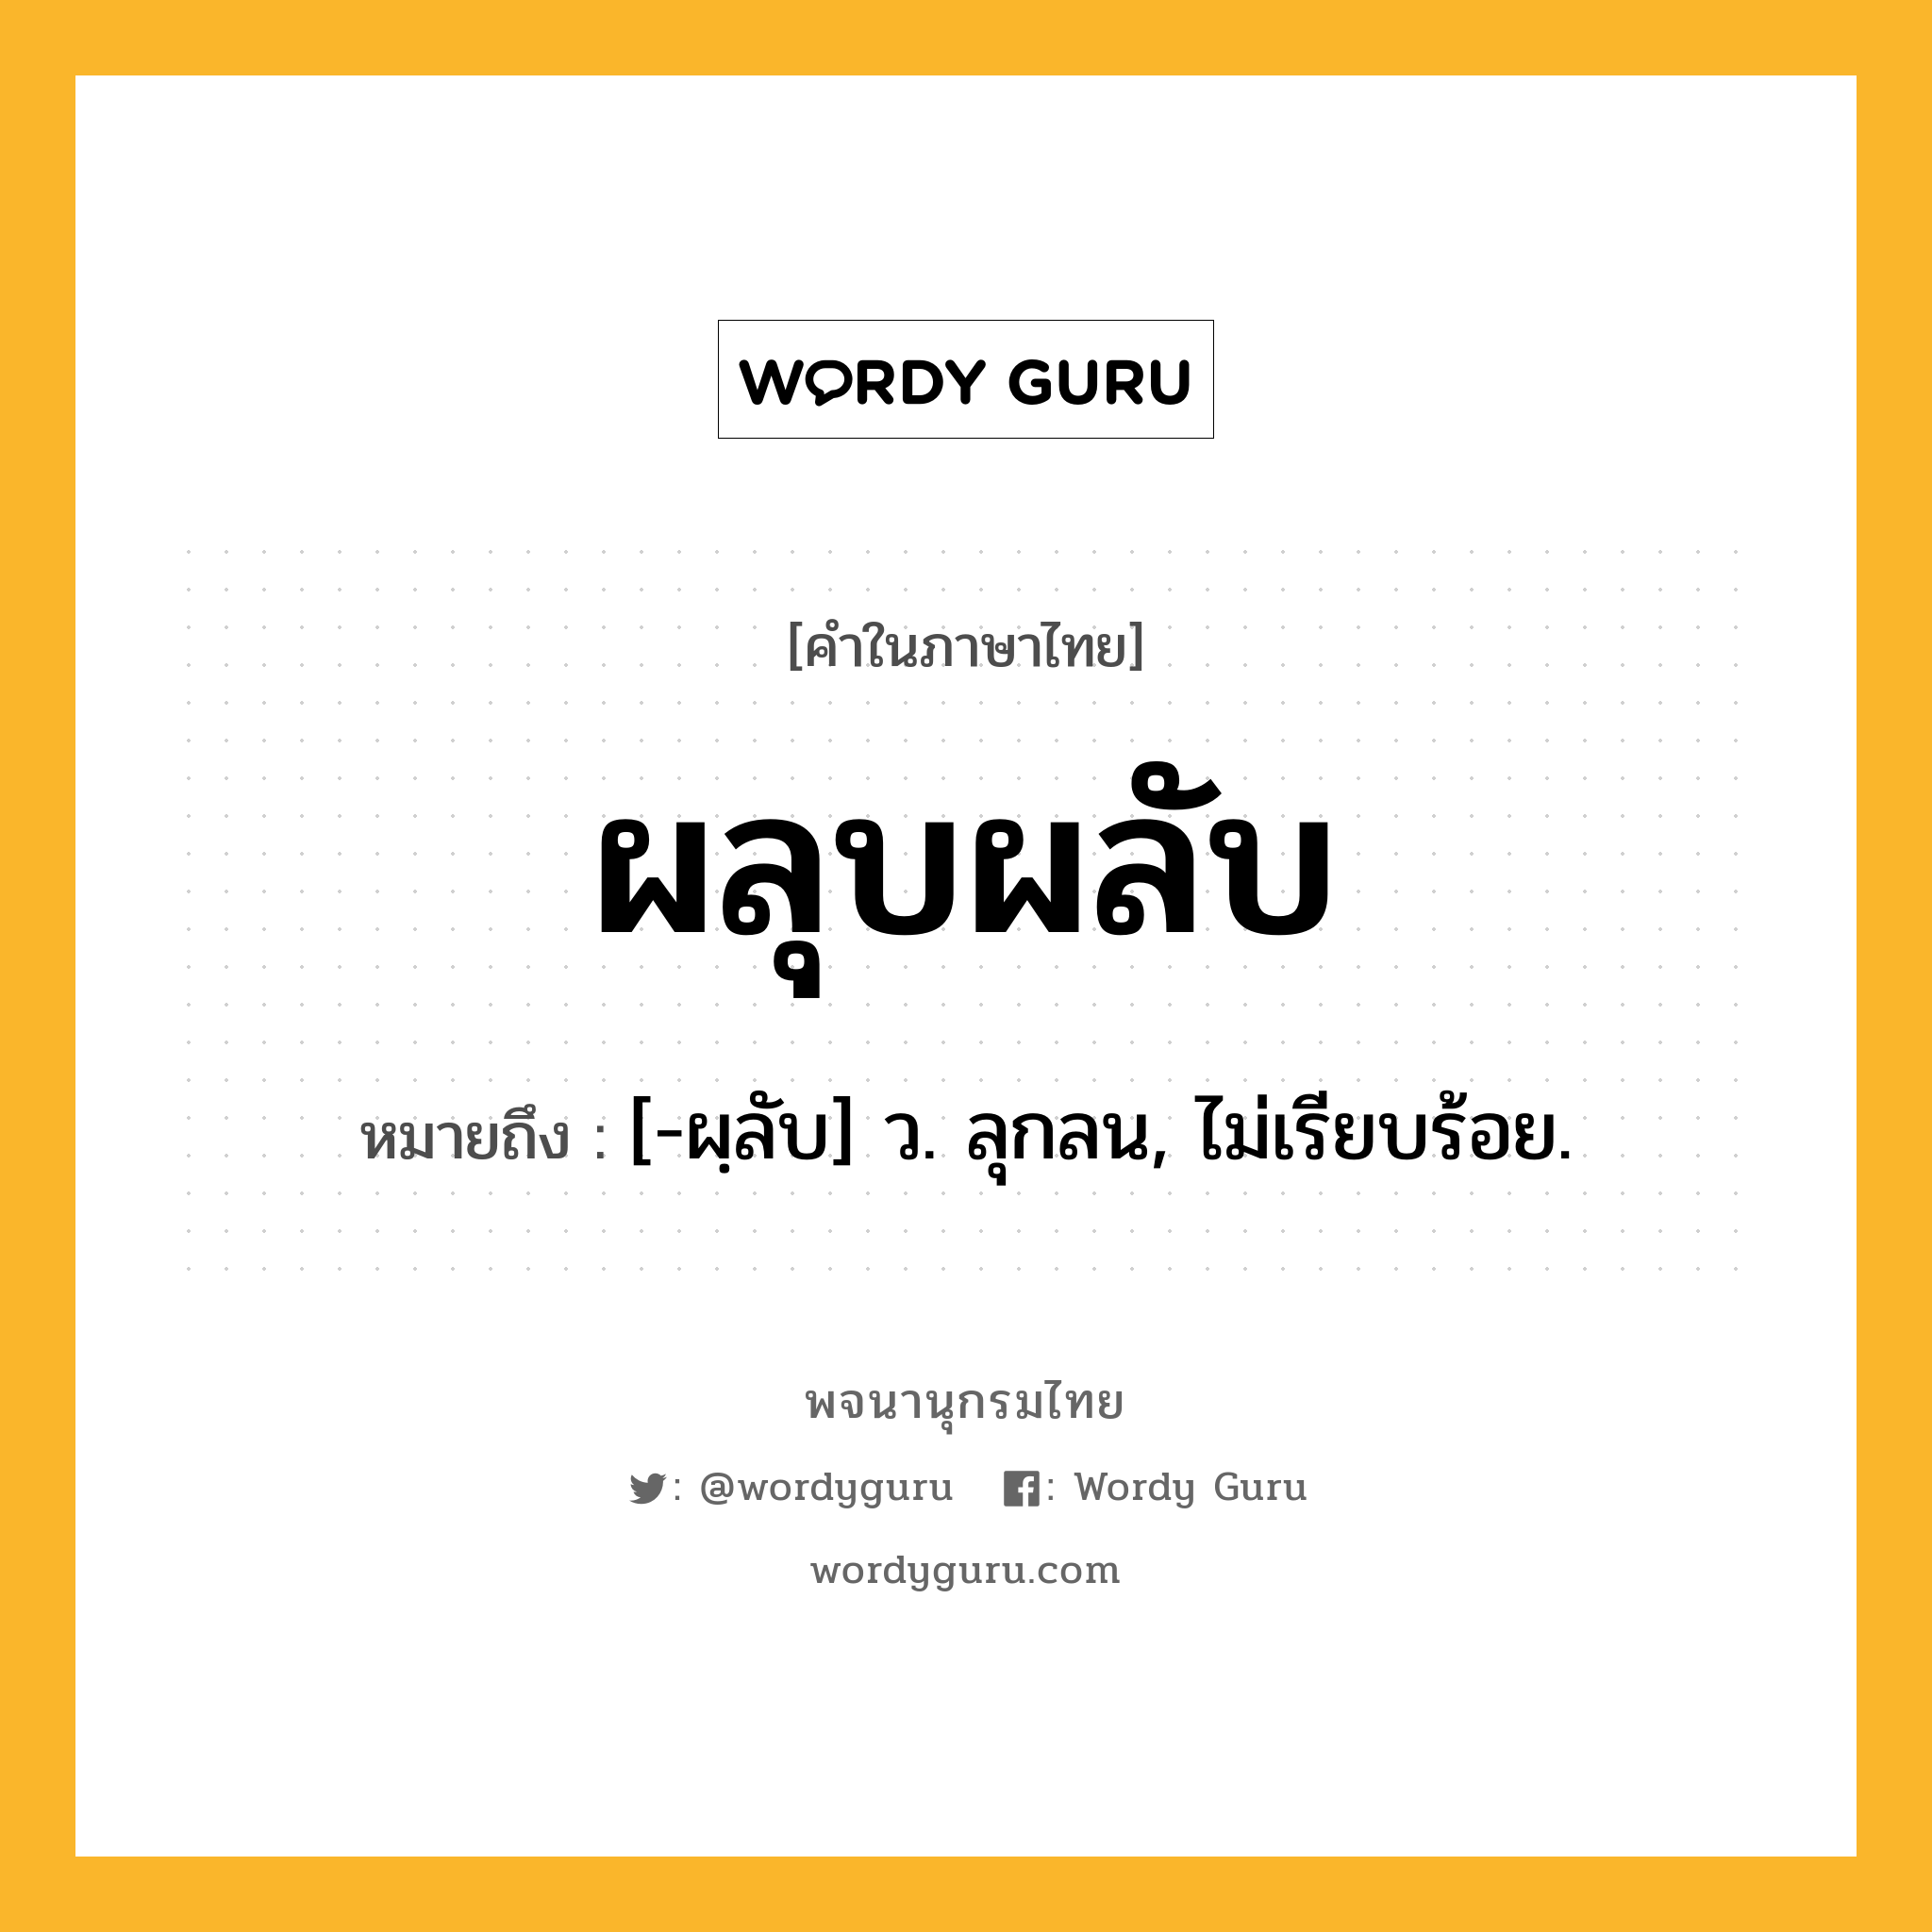 ผลุบผลับ ความหมาย หมายถึงอะไร?, คำในภาษาไทย ผลุบผลับ หมายถึง [-ผฺลับ] ว. ลุกลน, ไม่เรียบร้อย.